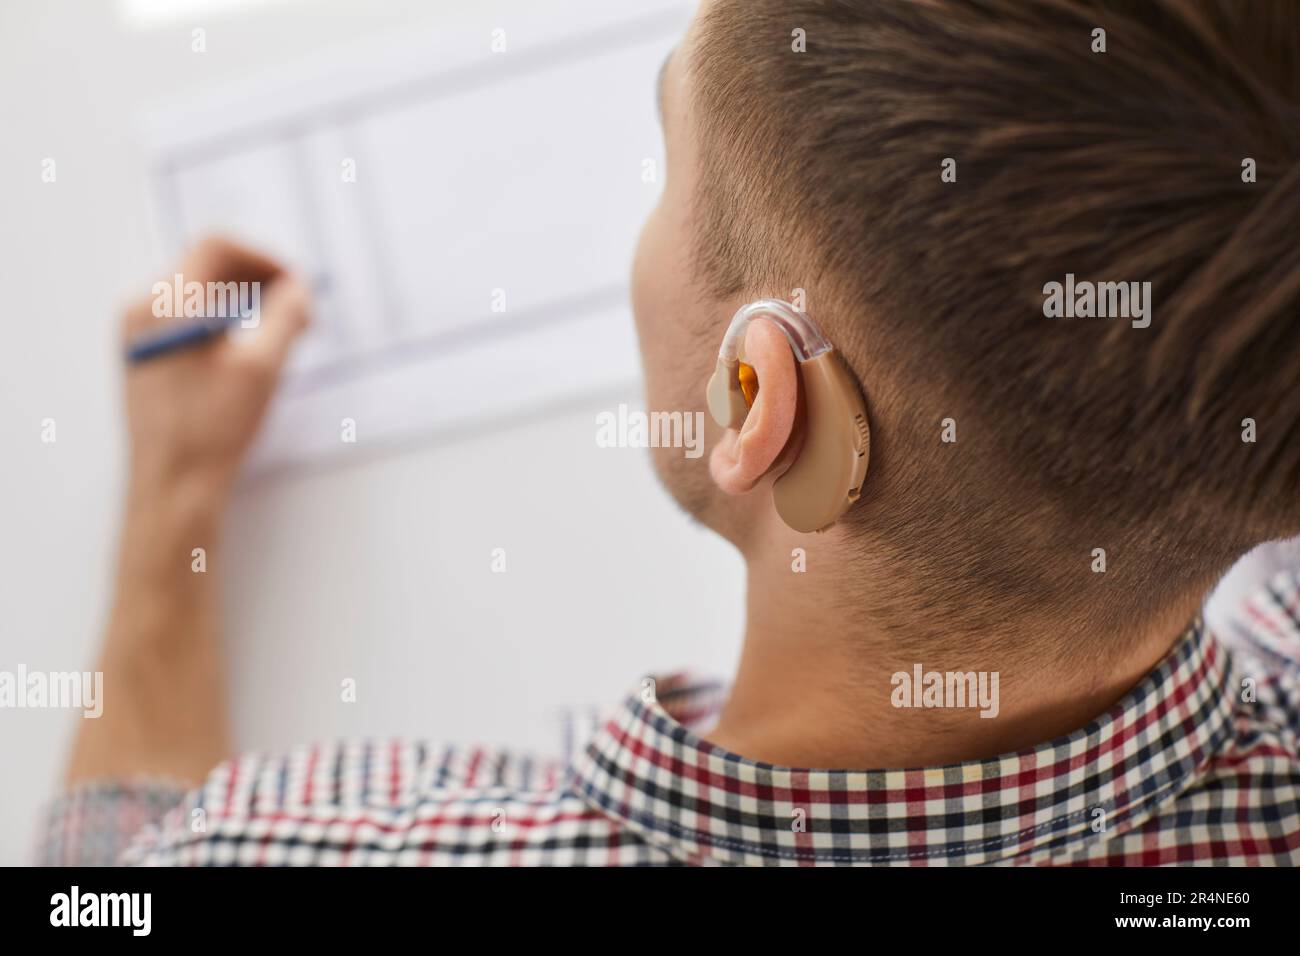 Nahaufnahme eines Menschen mit Hörgerät, der auf Papier malt Stockfoto